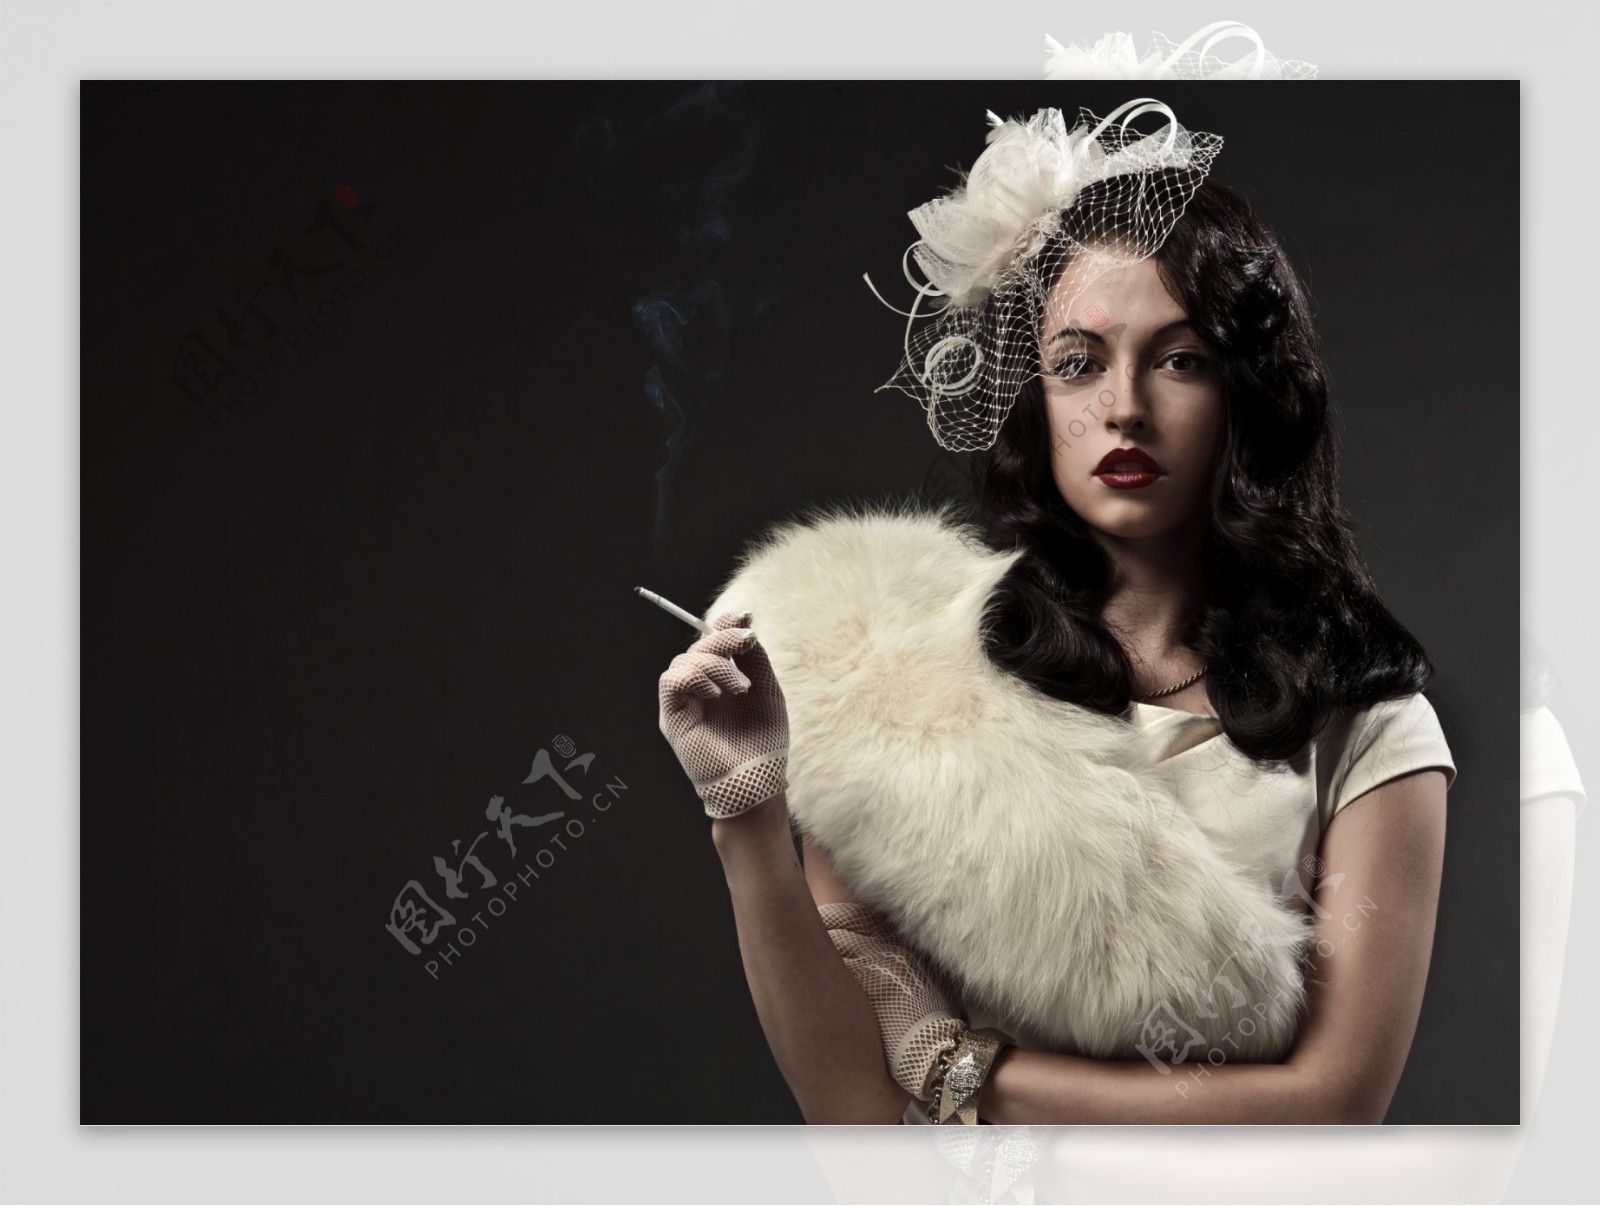 图片素材 : 抽烟, 女孩, 黑色, 白色, 美容, 手, 云, 闪光摄影 3856x5872 - Zayacman93 - 1603874 ...